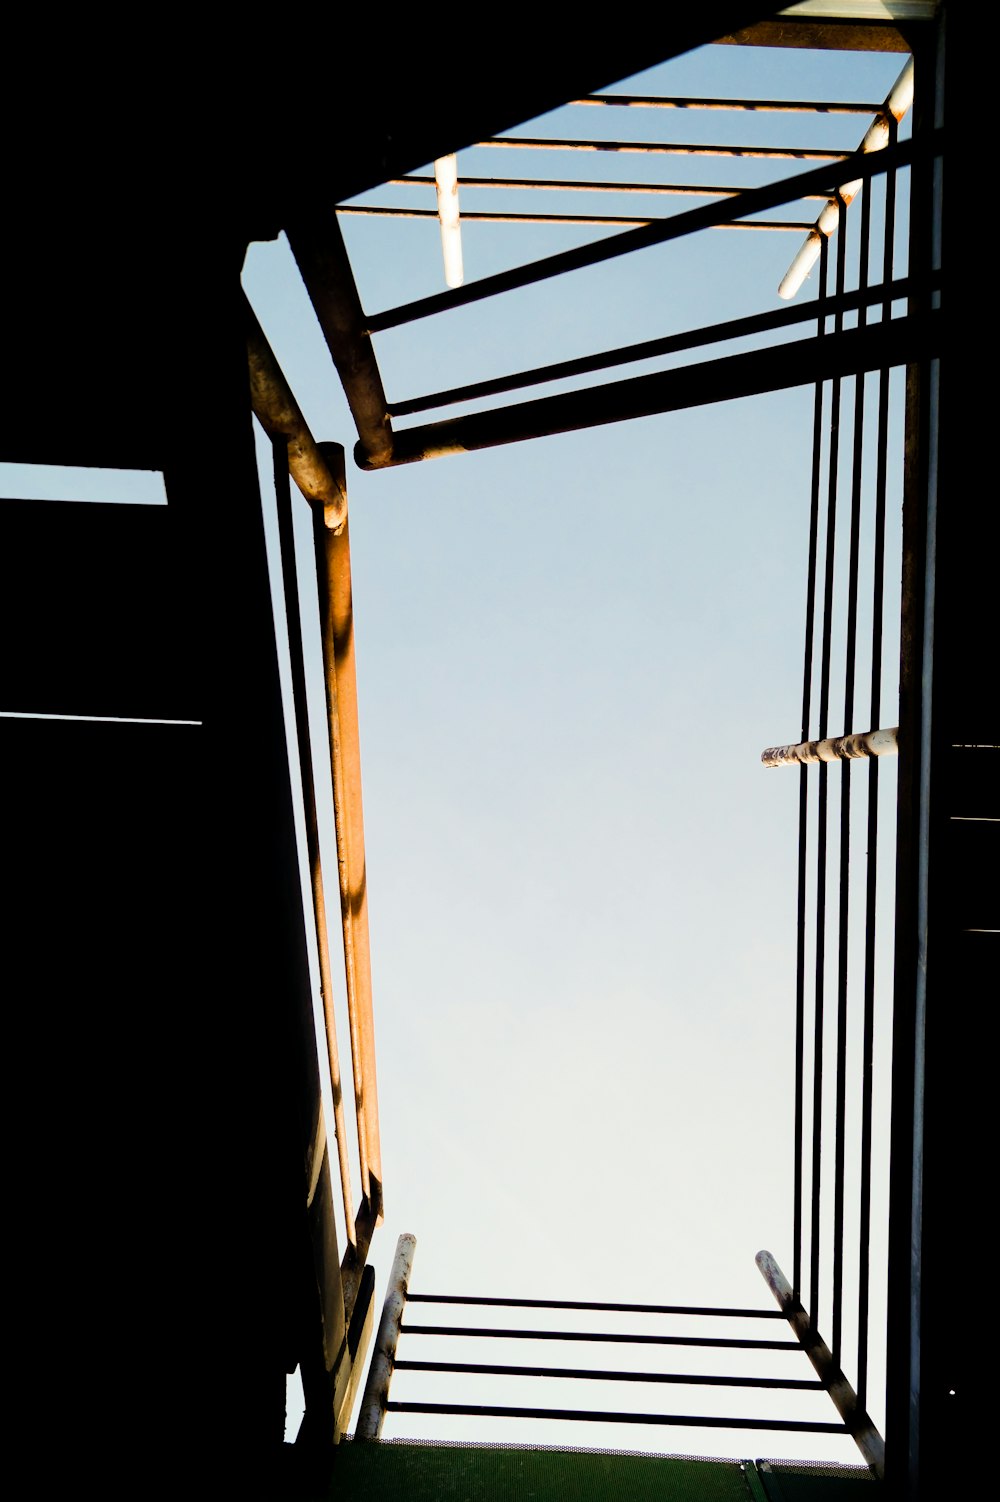 brown wooden ladder during daytime